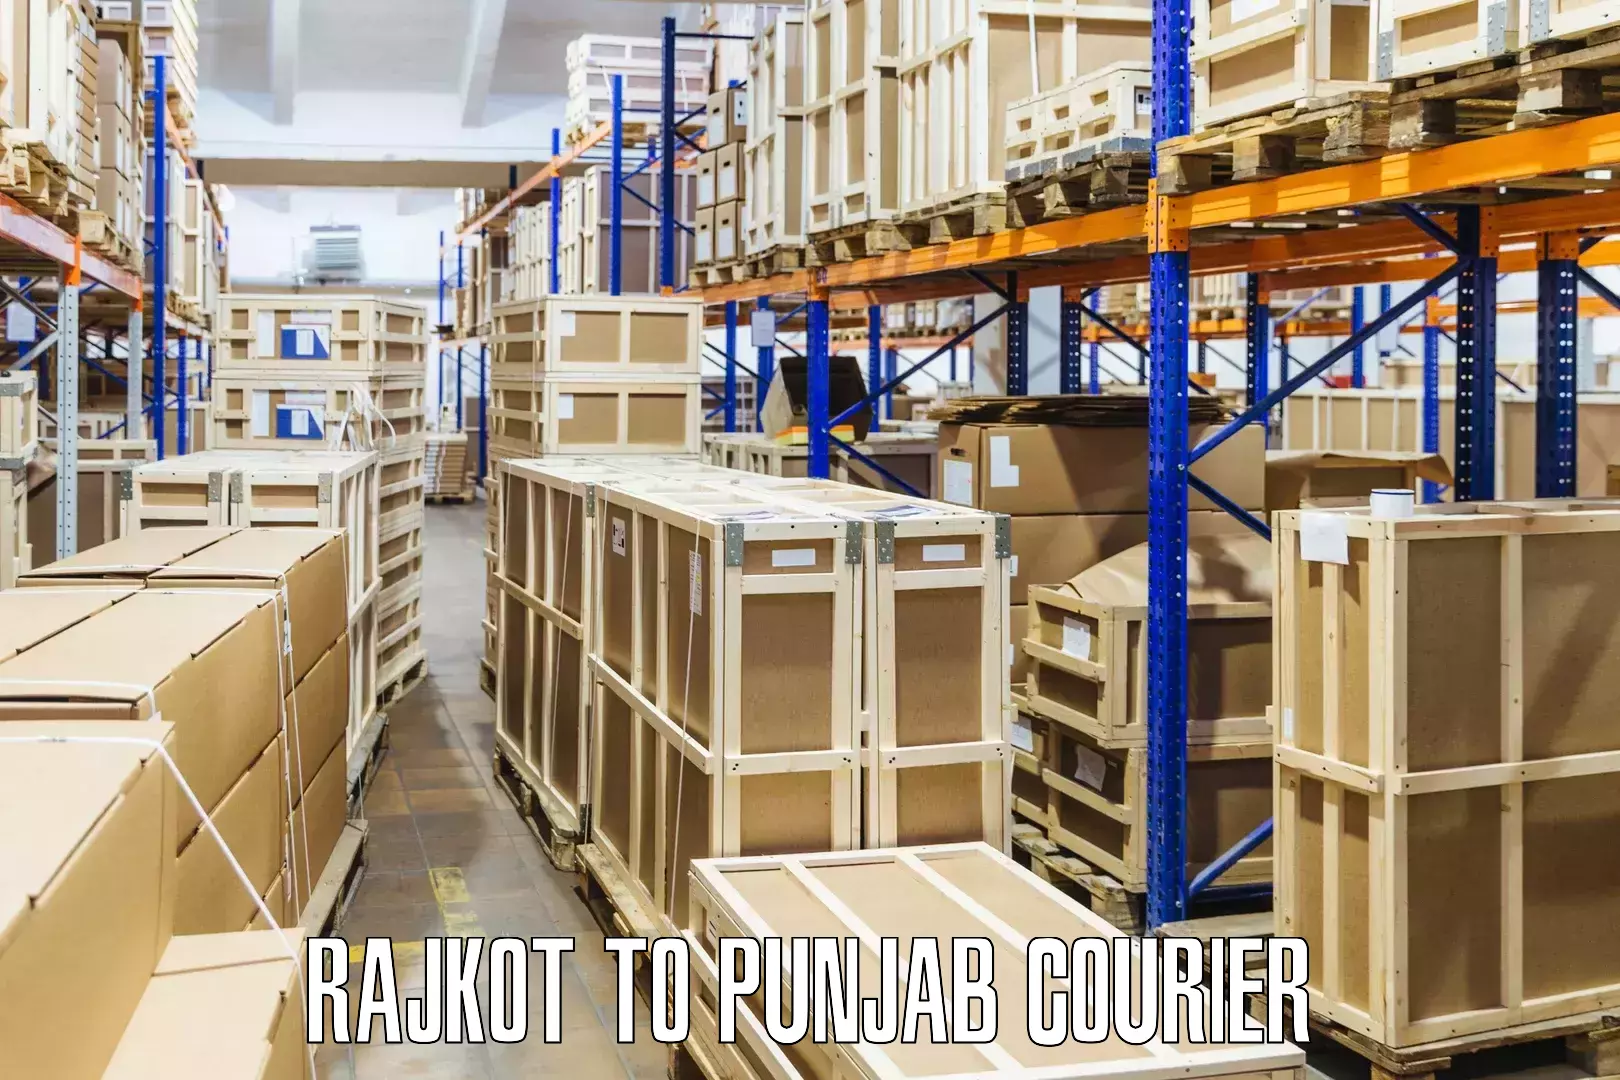 International courier networks Rajkot to Jalandhar